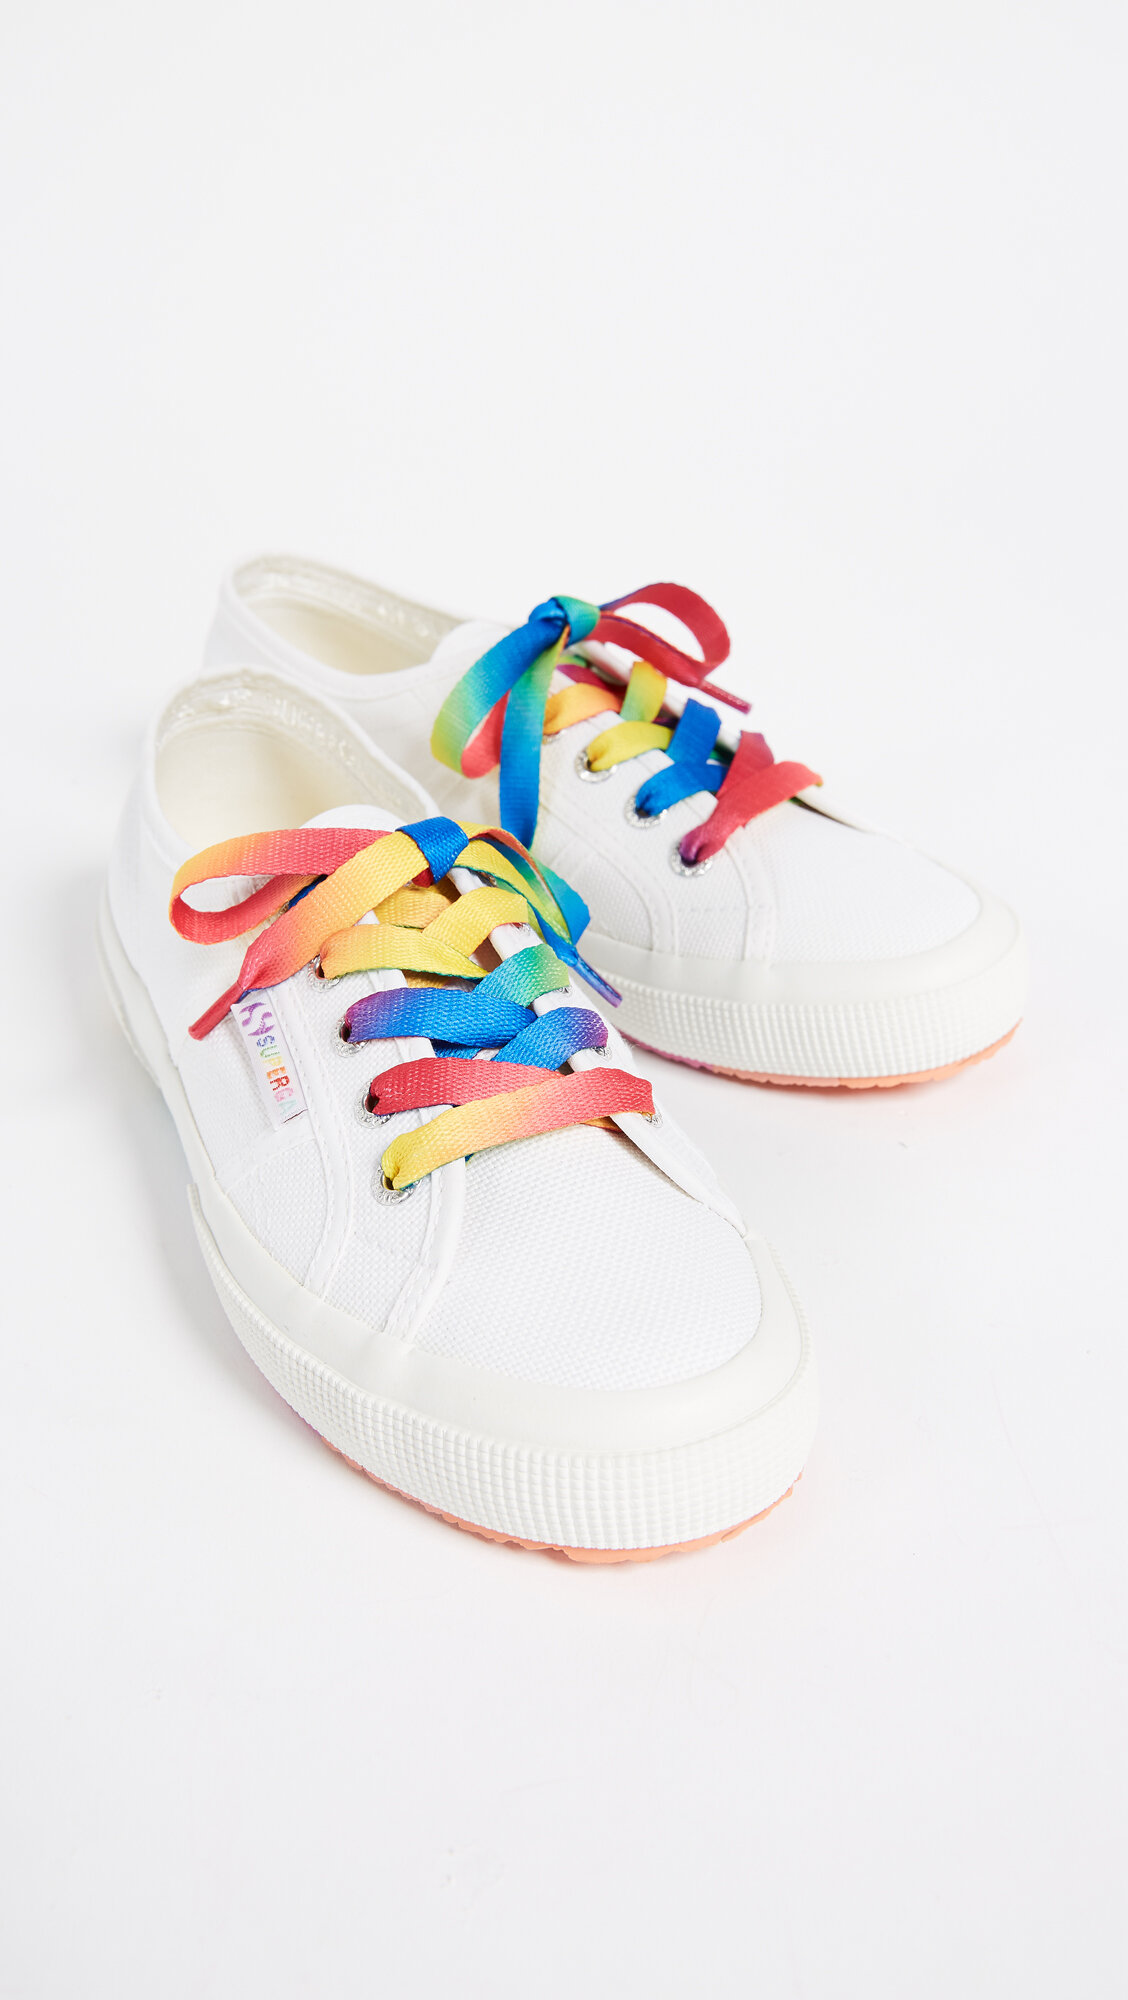 Superga – Multi Color Sneakers